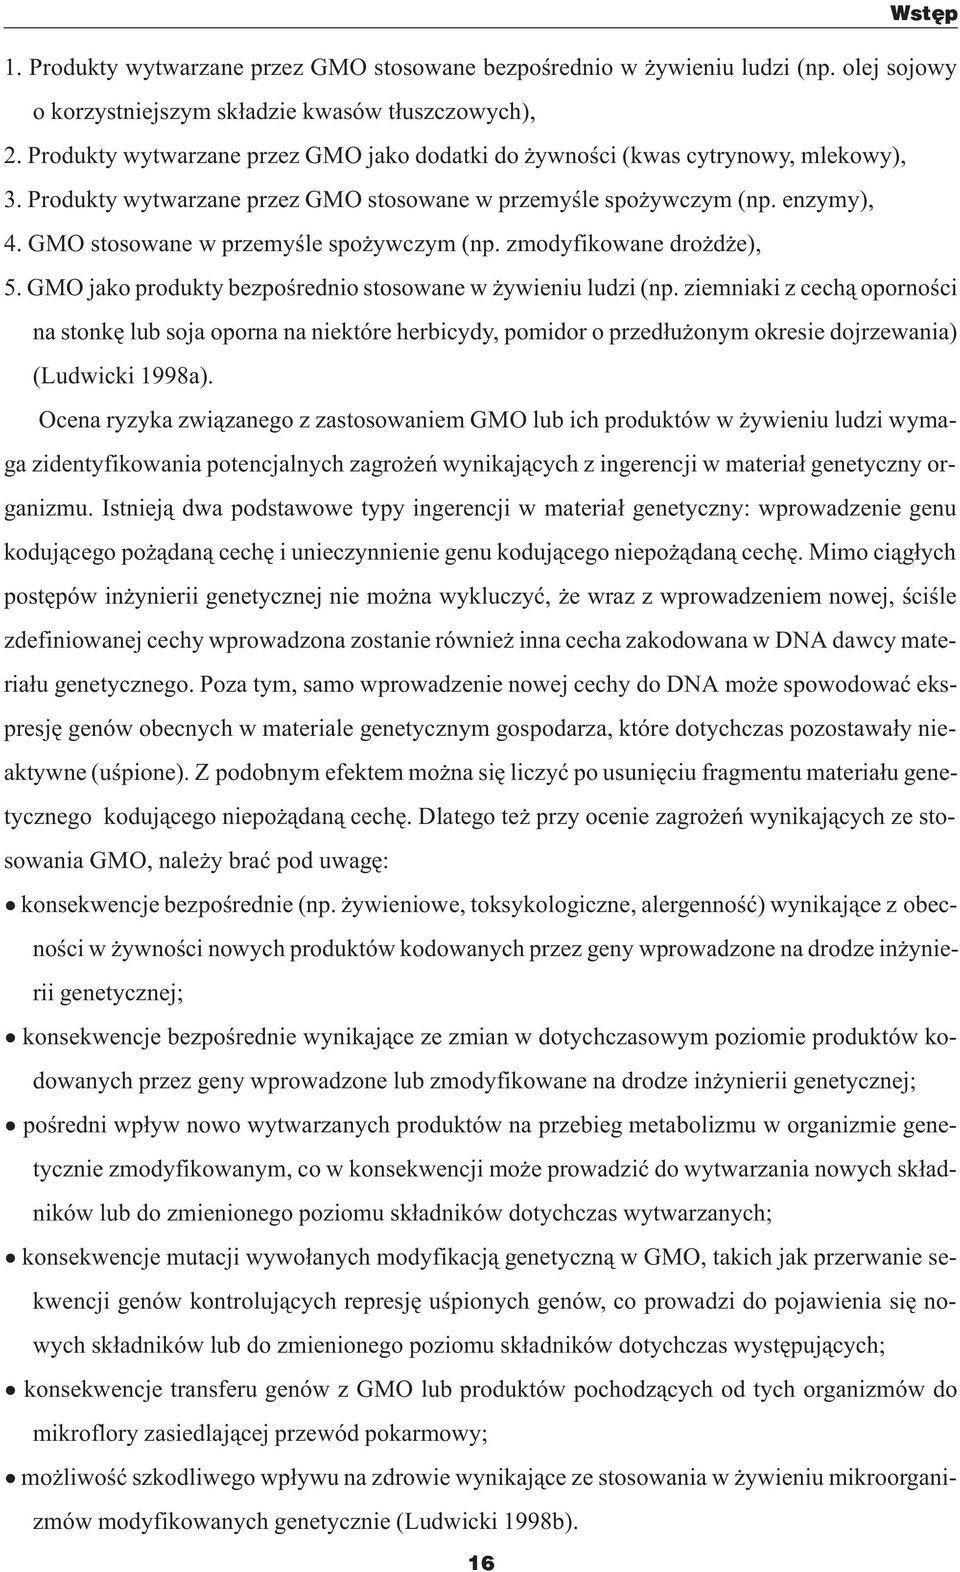 GMO stosowane w przemyœle spo ywczym (np. zmodyfikowane dro d e), 5. GMO jako produkty bezpoœrednio stosowane w ywieniu ludzi (np.